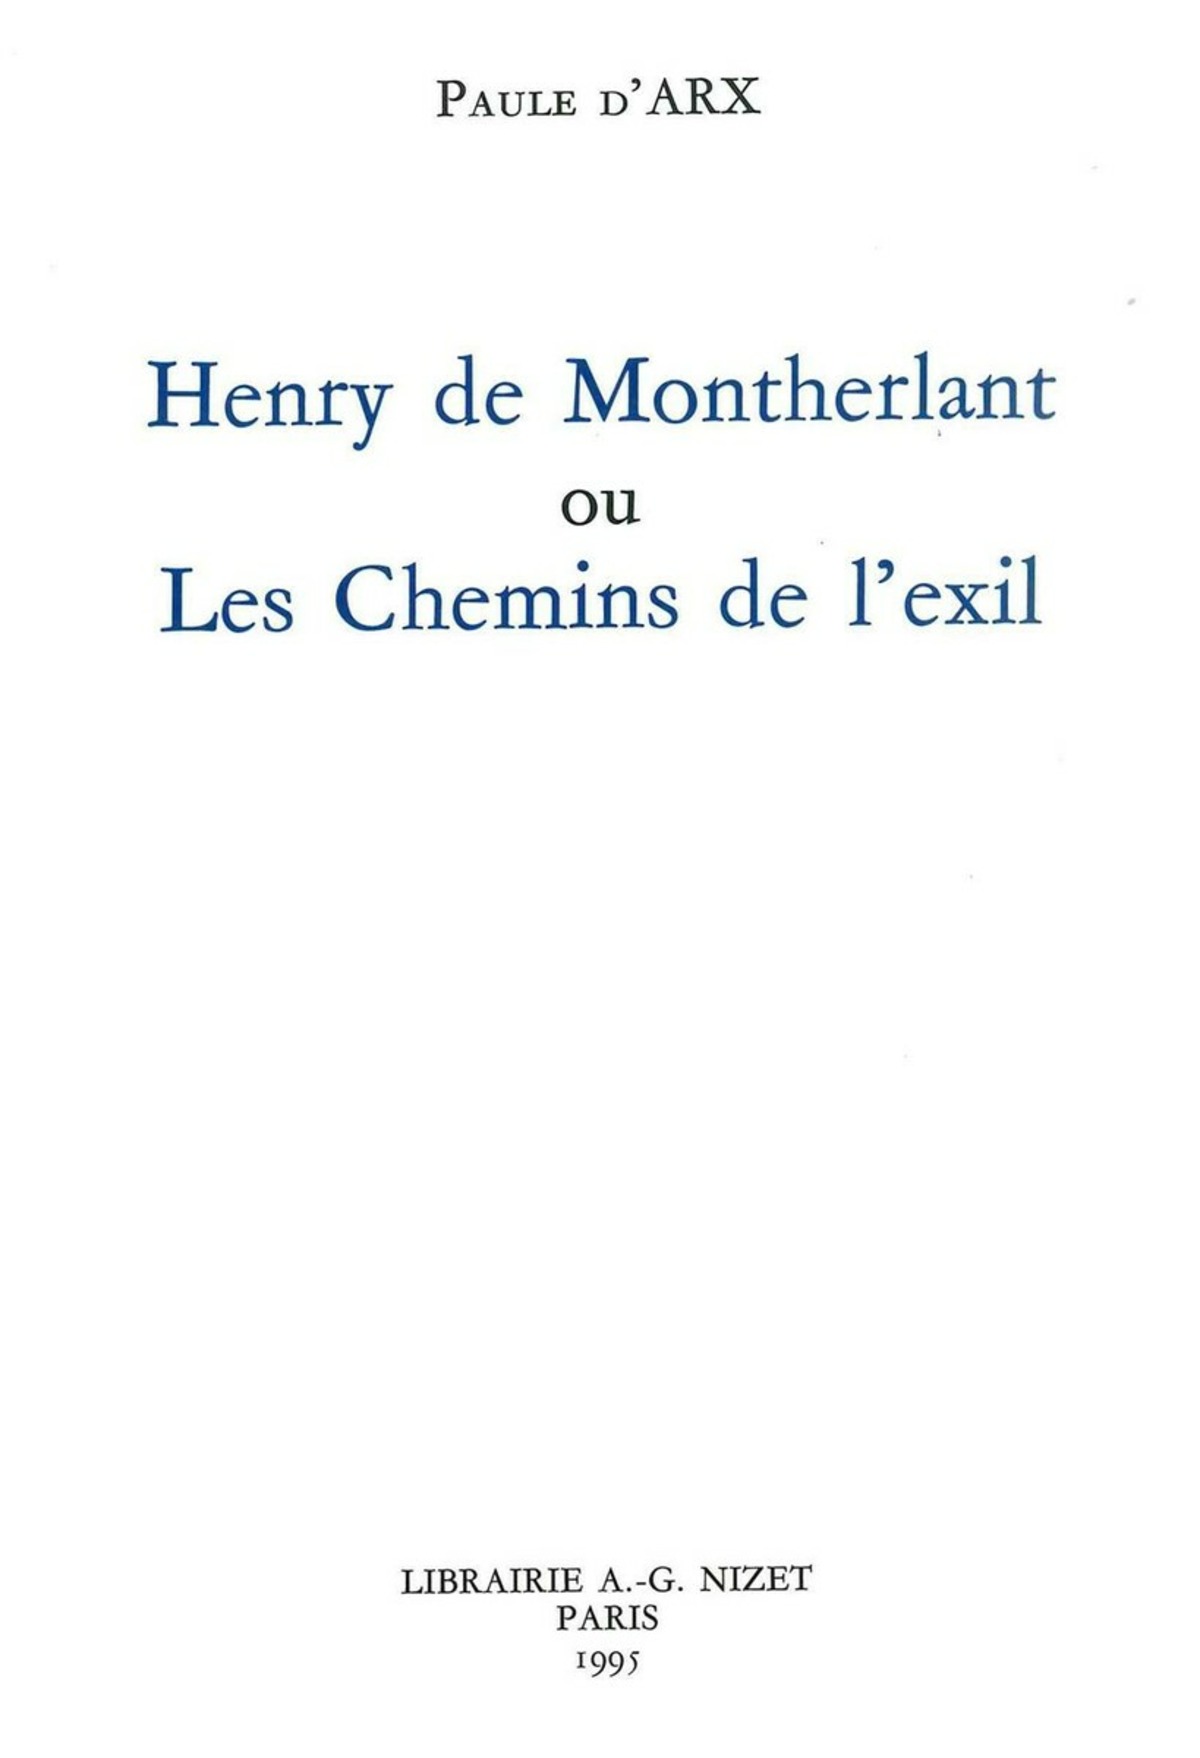 Henry de Montherlant ou les chemins de l'exil